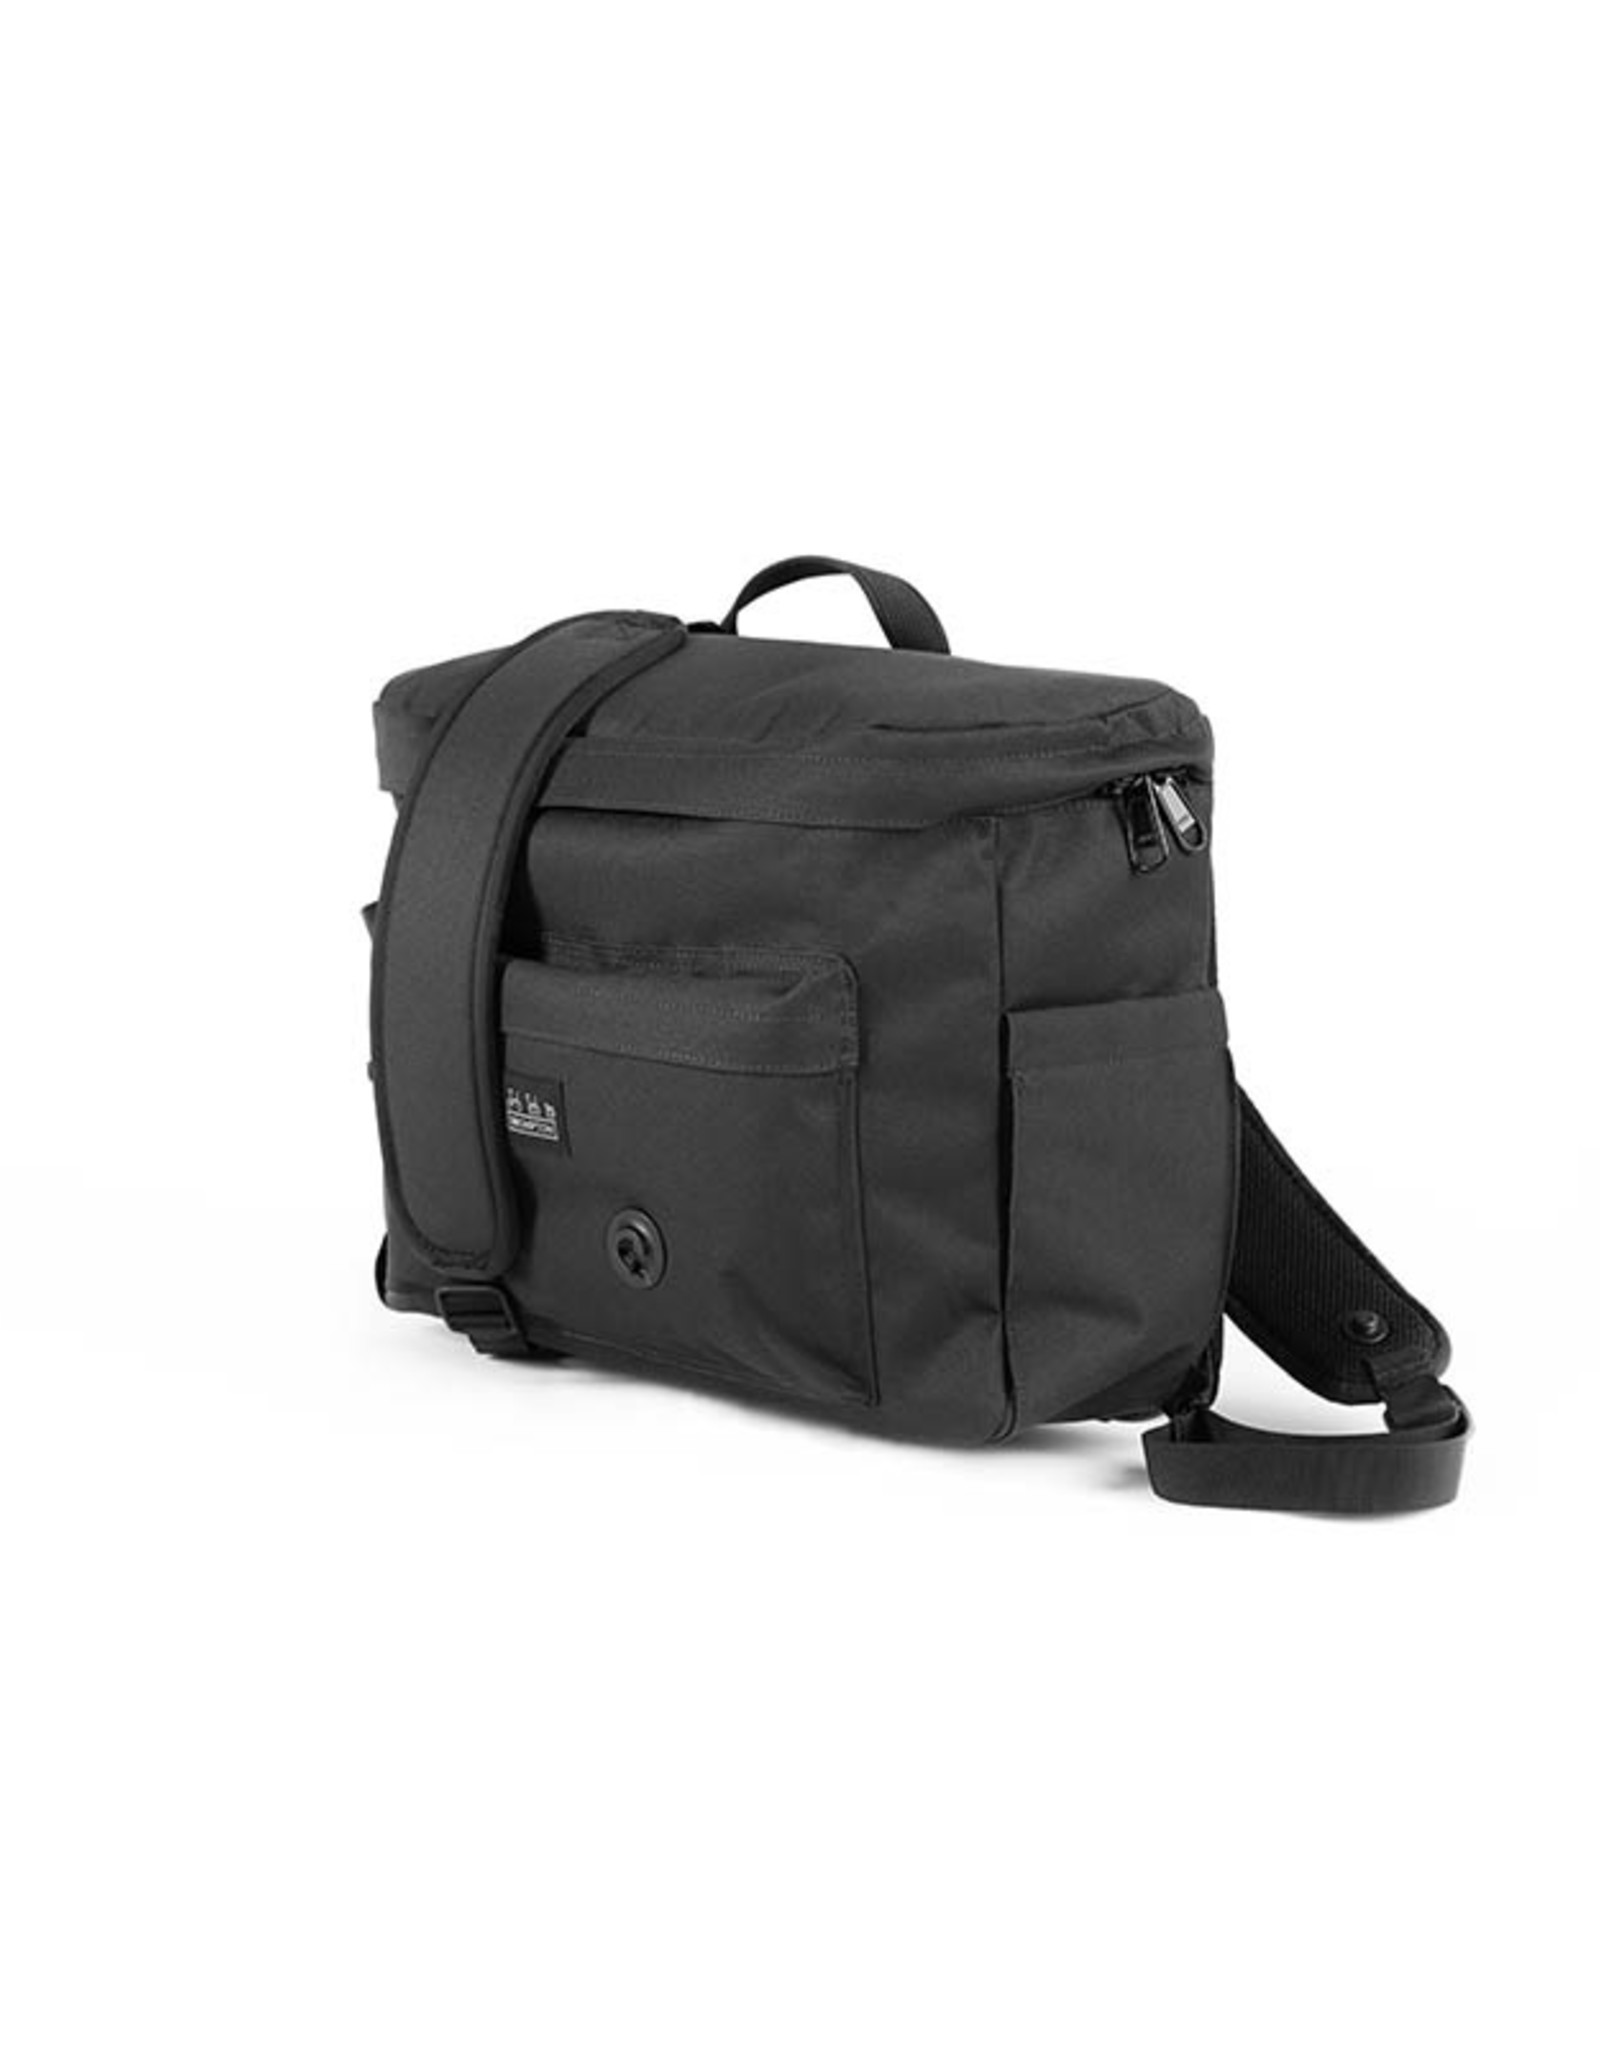 Brompton Brompton - Luggage - Metro Backpack Med, Black w/frame